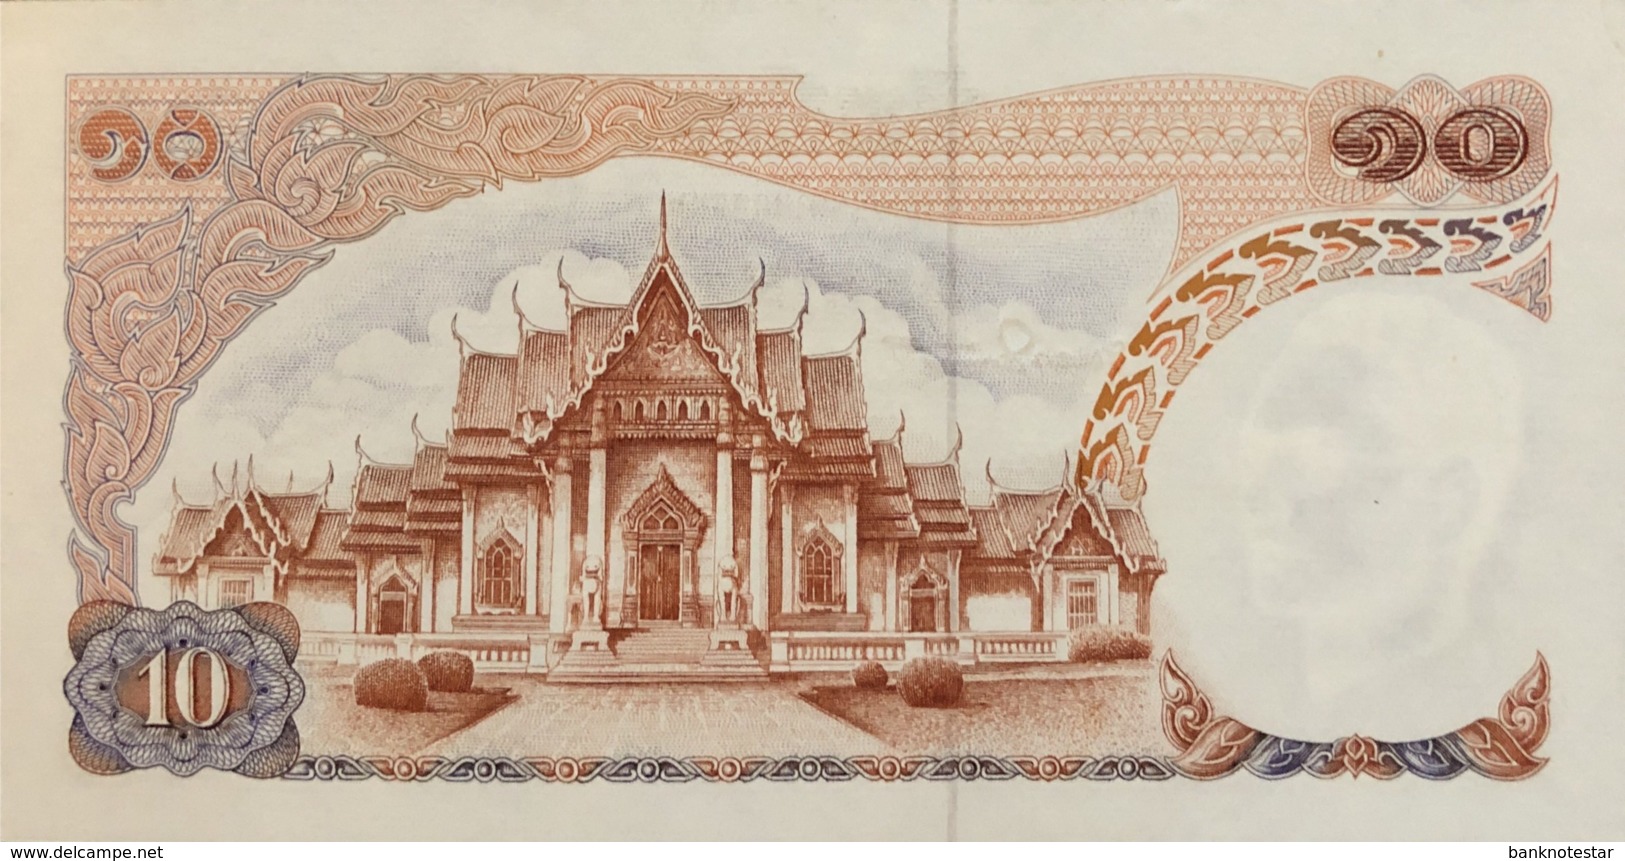 Thailand 10 Bath, P-83 (1969) - UNC - Signature 50 - Tailandia